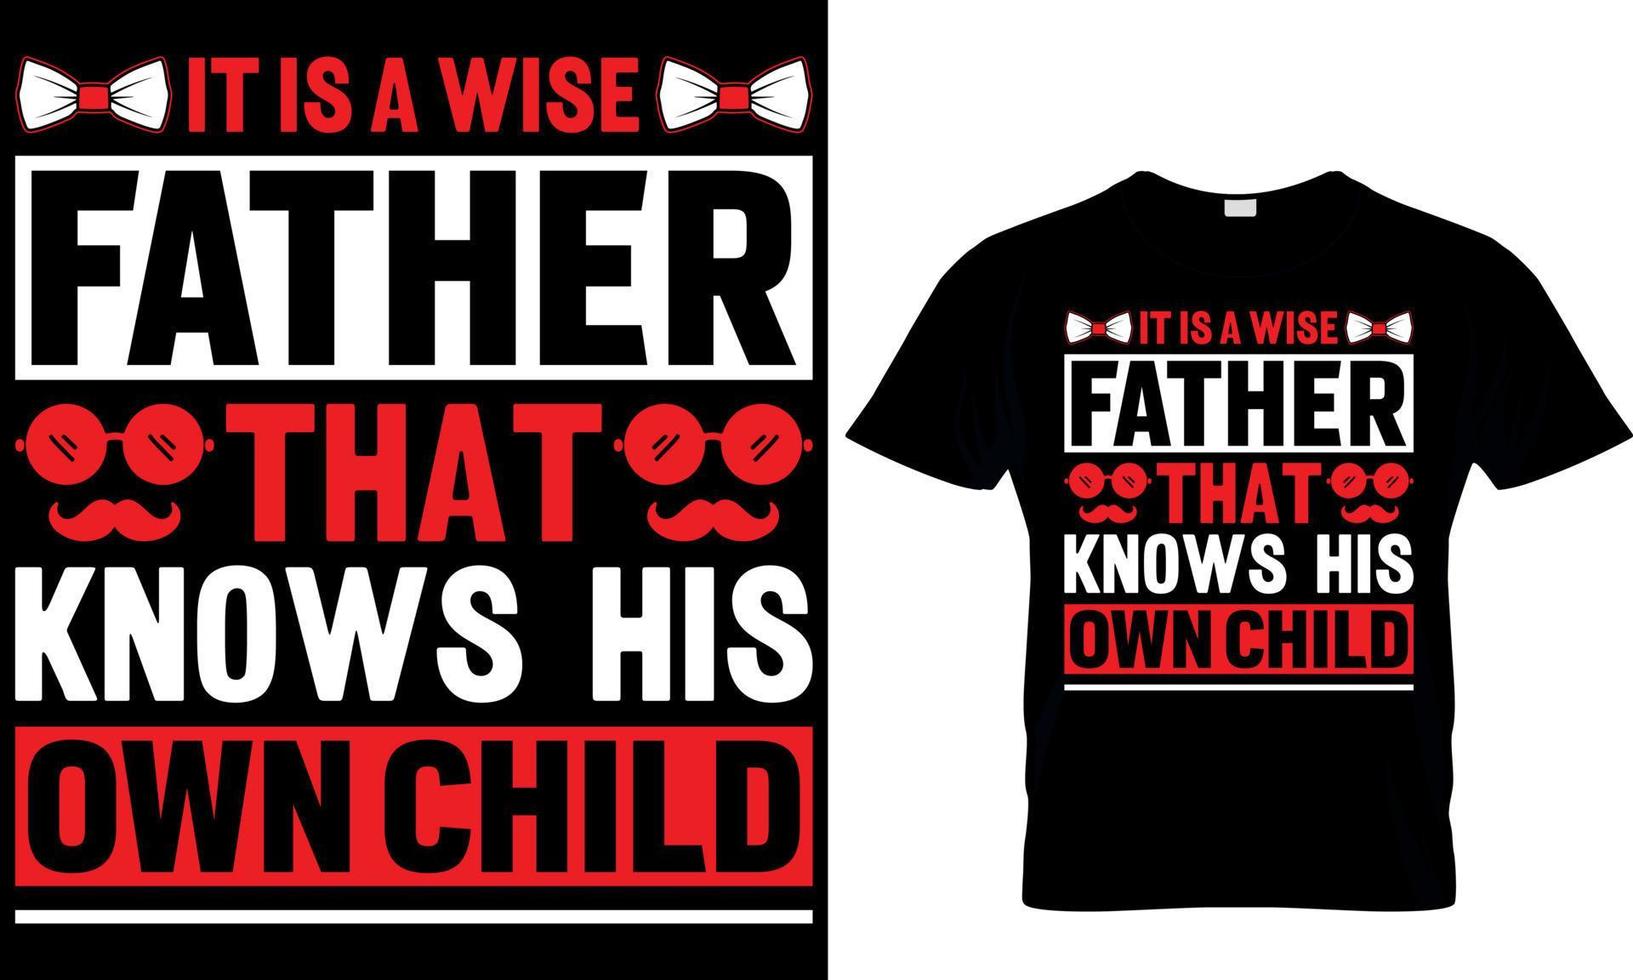 c'est un père sage qui connaît son propre enfant. conception de t-shirt pour la fête des pères vecteur